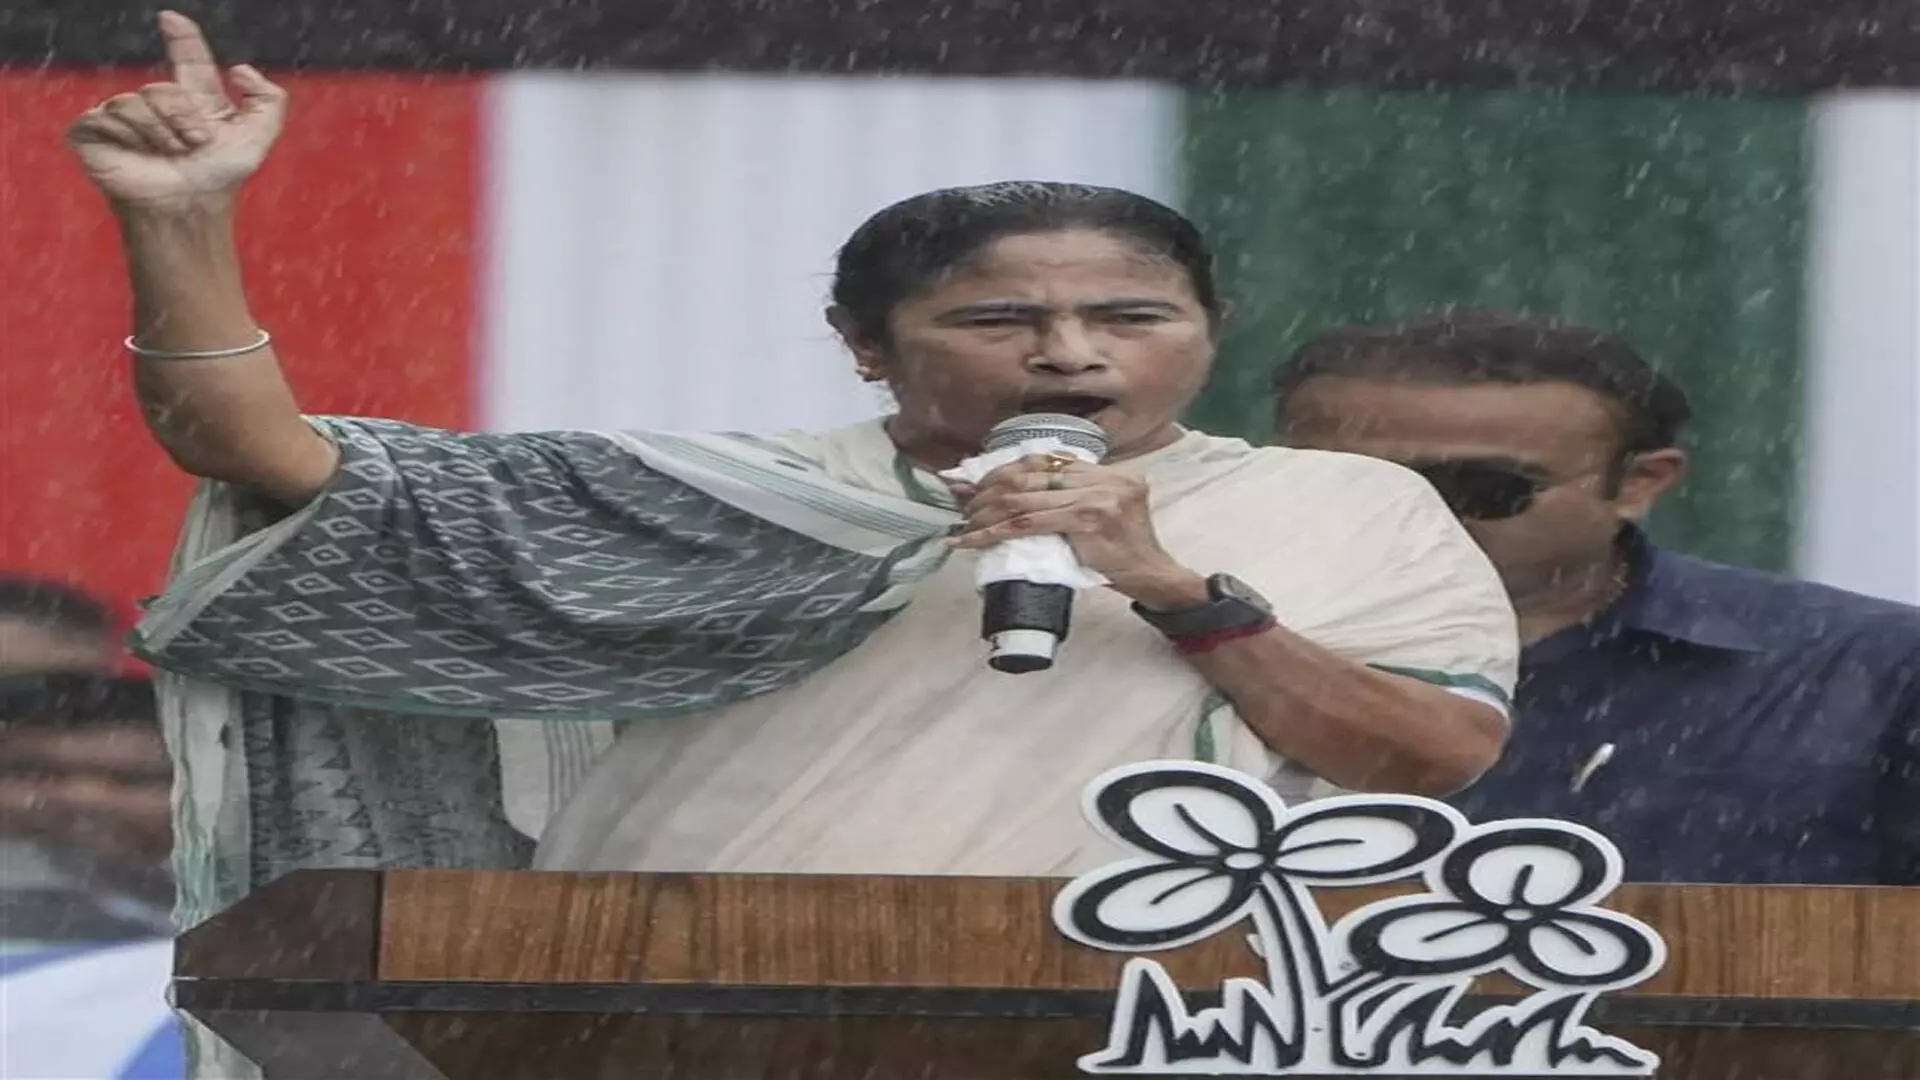 CM ममता बनर्जी ने समर्थकों से बांग्लादेश के घटनाक्रम से उत्तेजित न होने का आग्रह किया